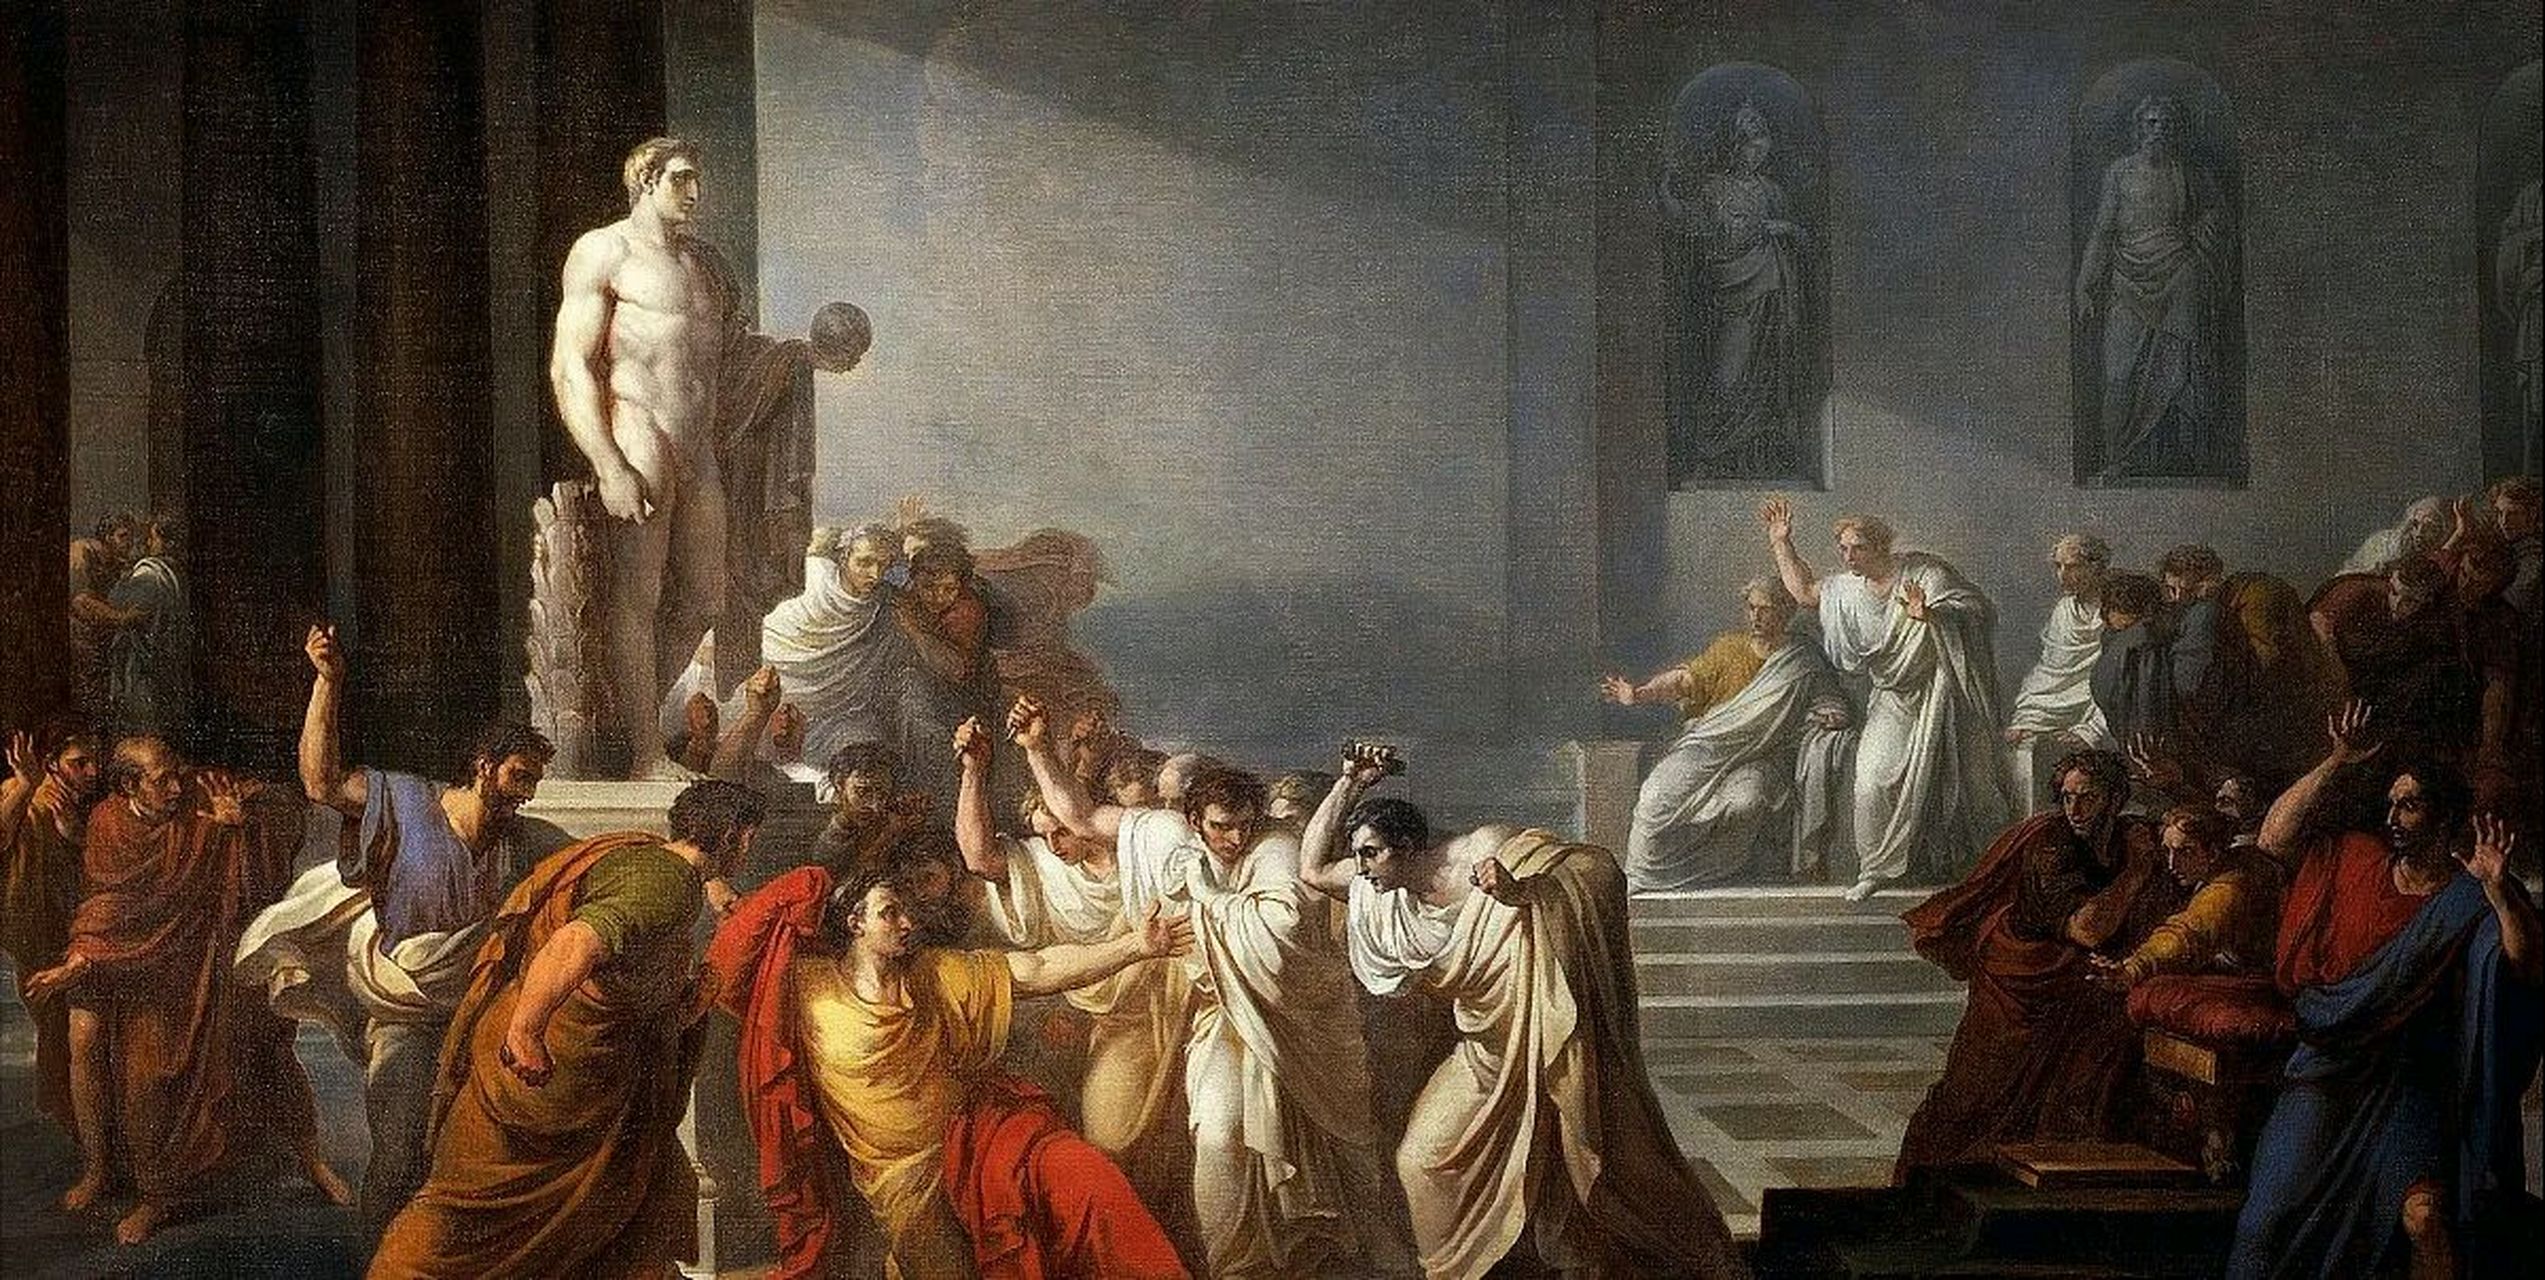 然而,凯撒的死不仅仅影响了罗马,也影响了整个西方世界的历史